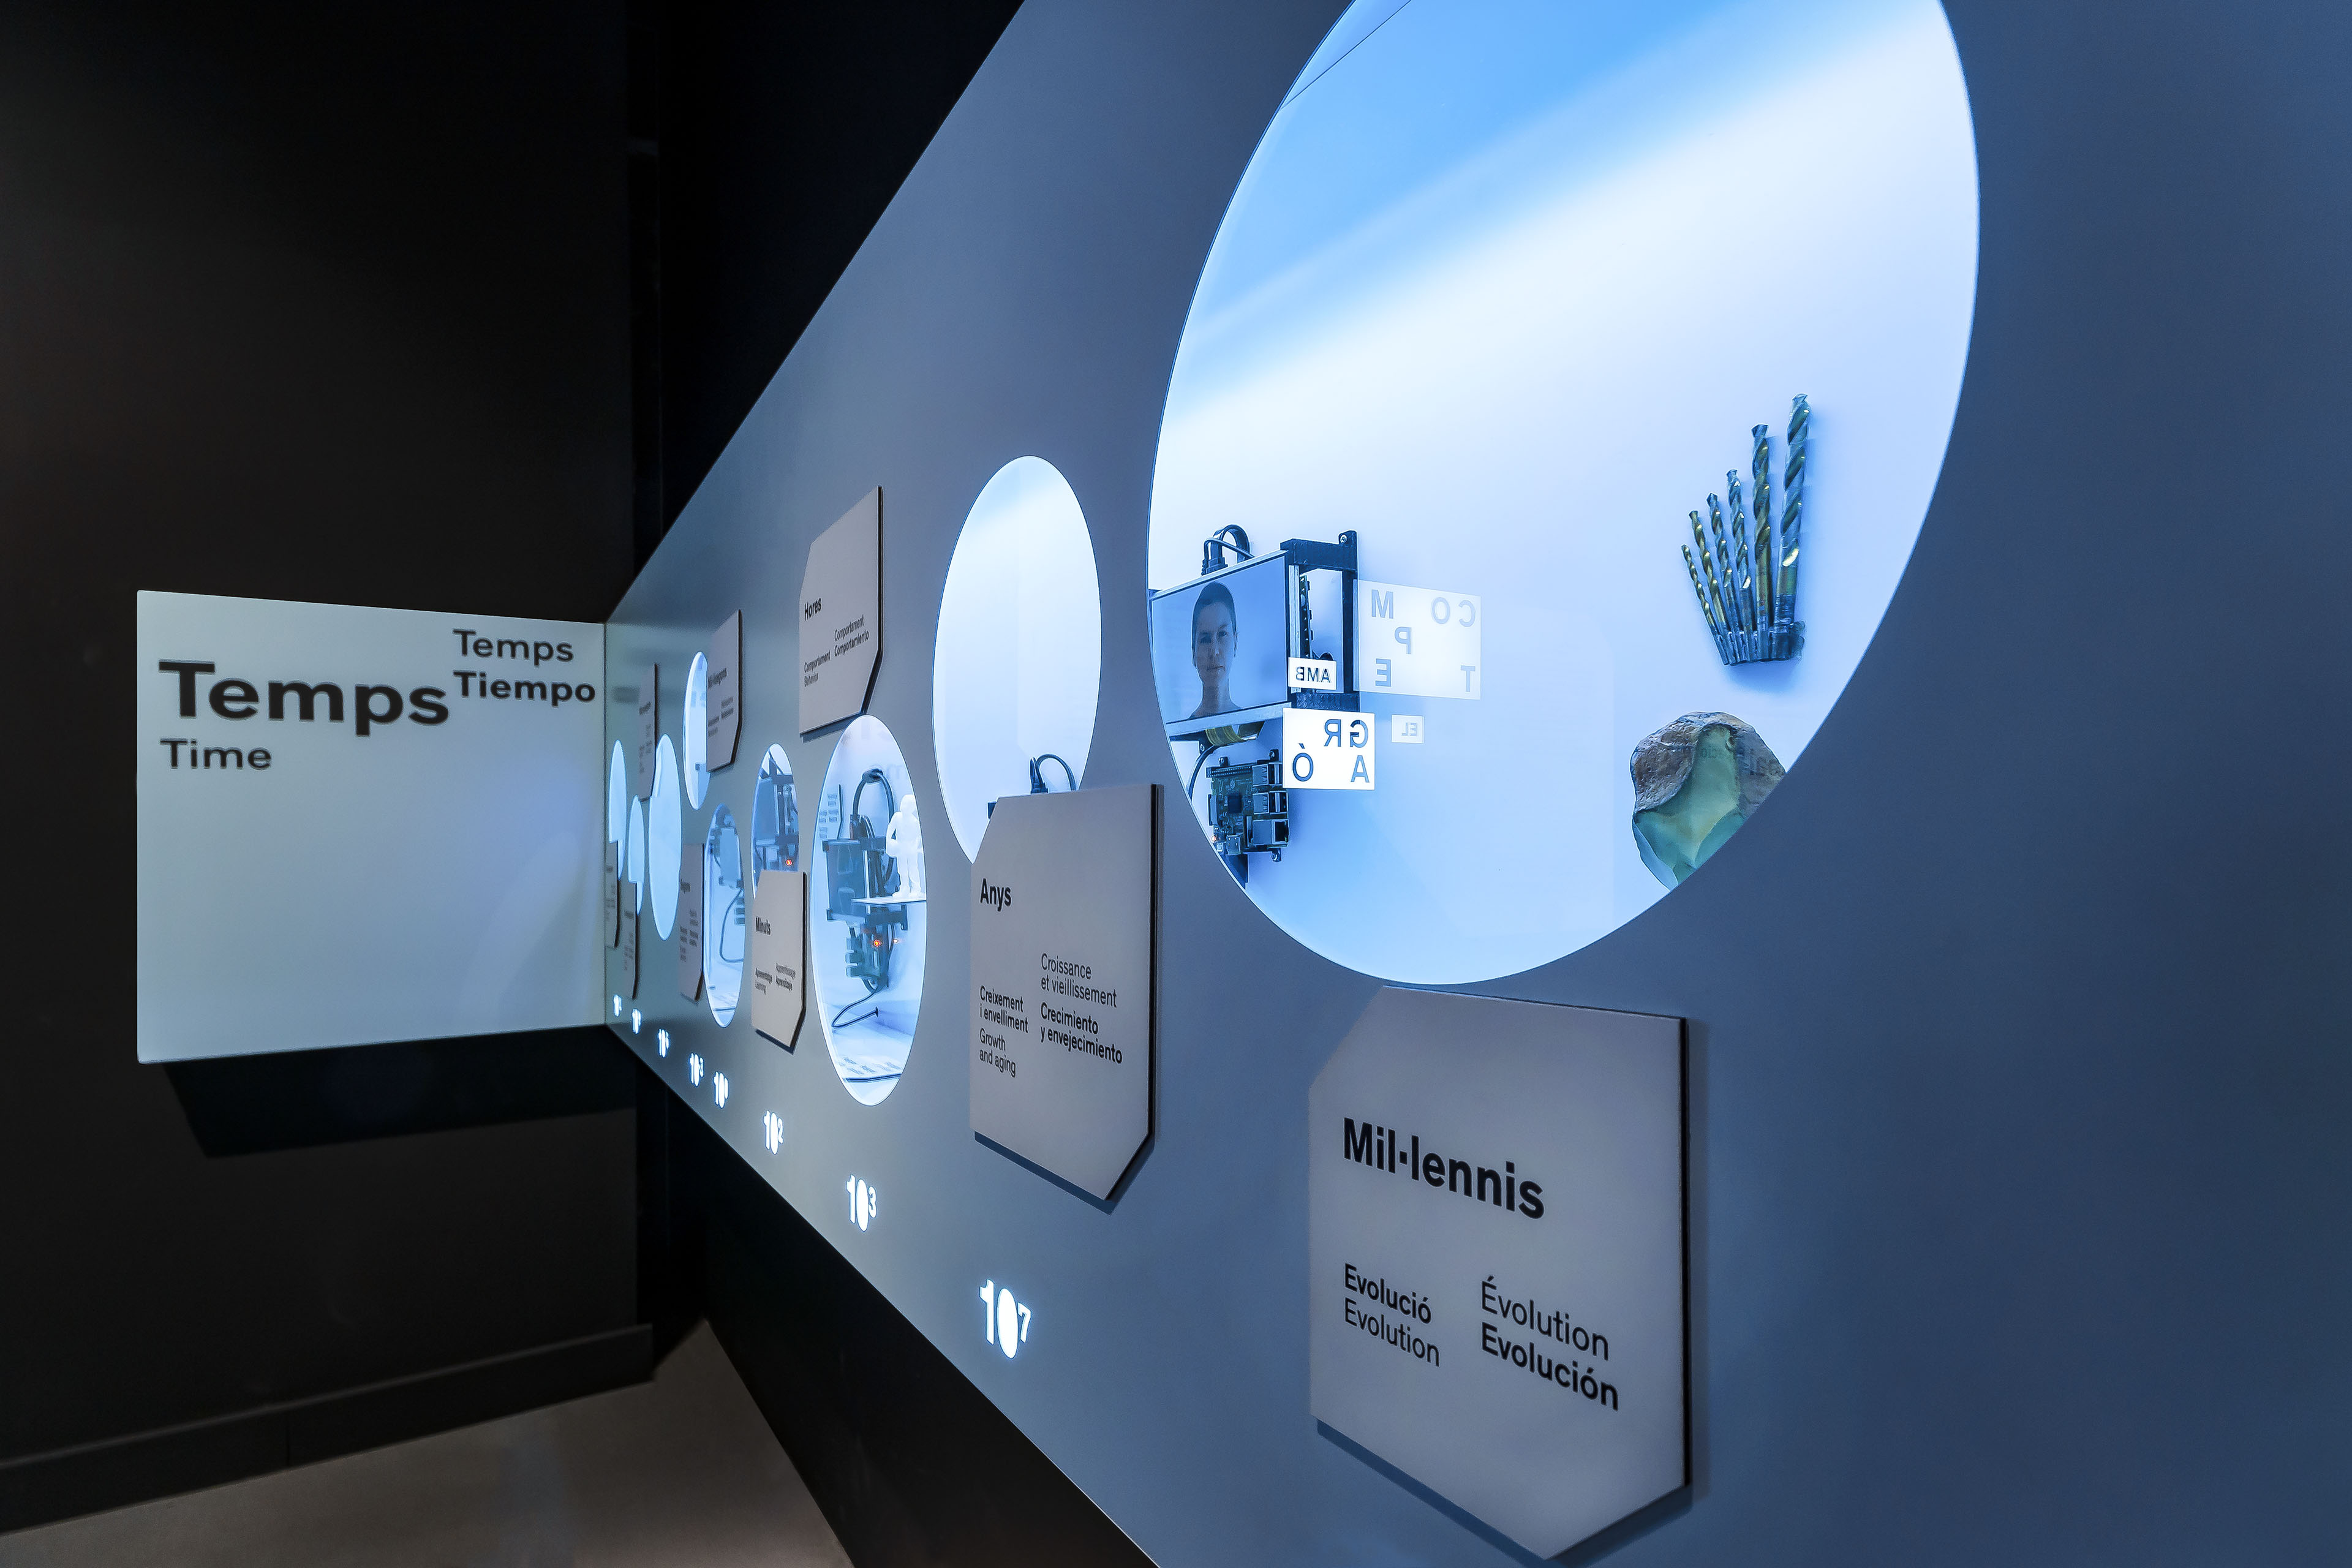 interactive-exhibition-talking-brains-cosmocaixa-barcelona-spain-image-50